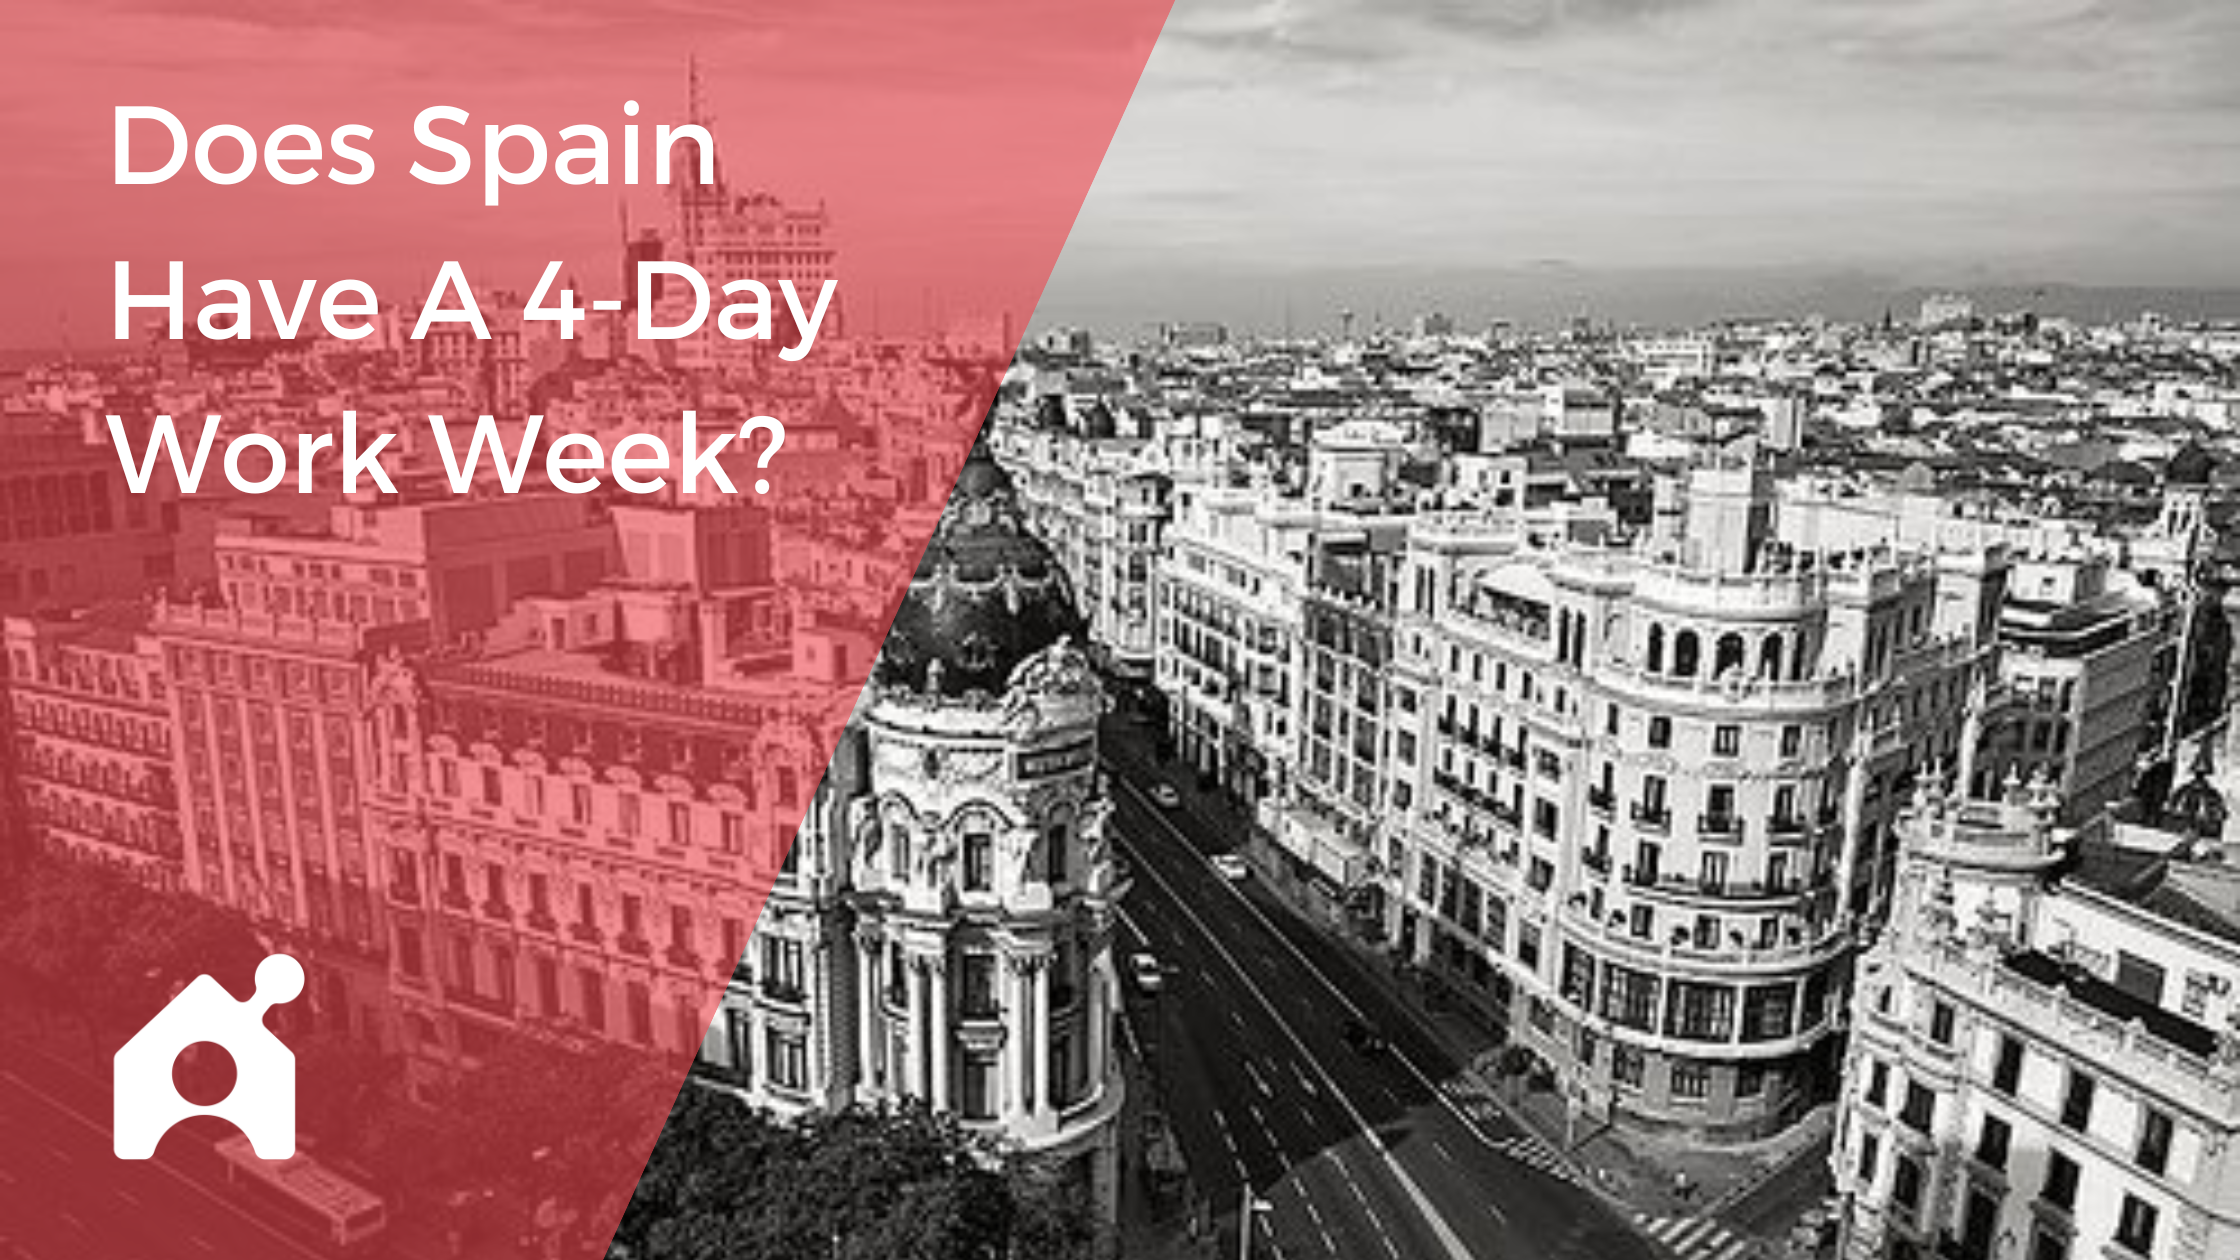 Spain's 4-day work week